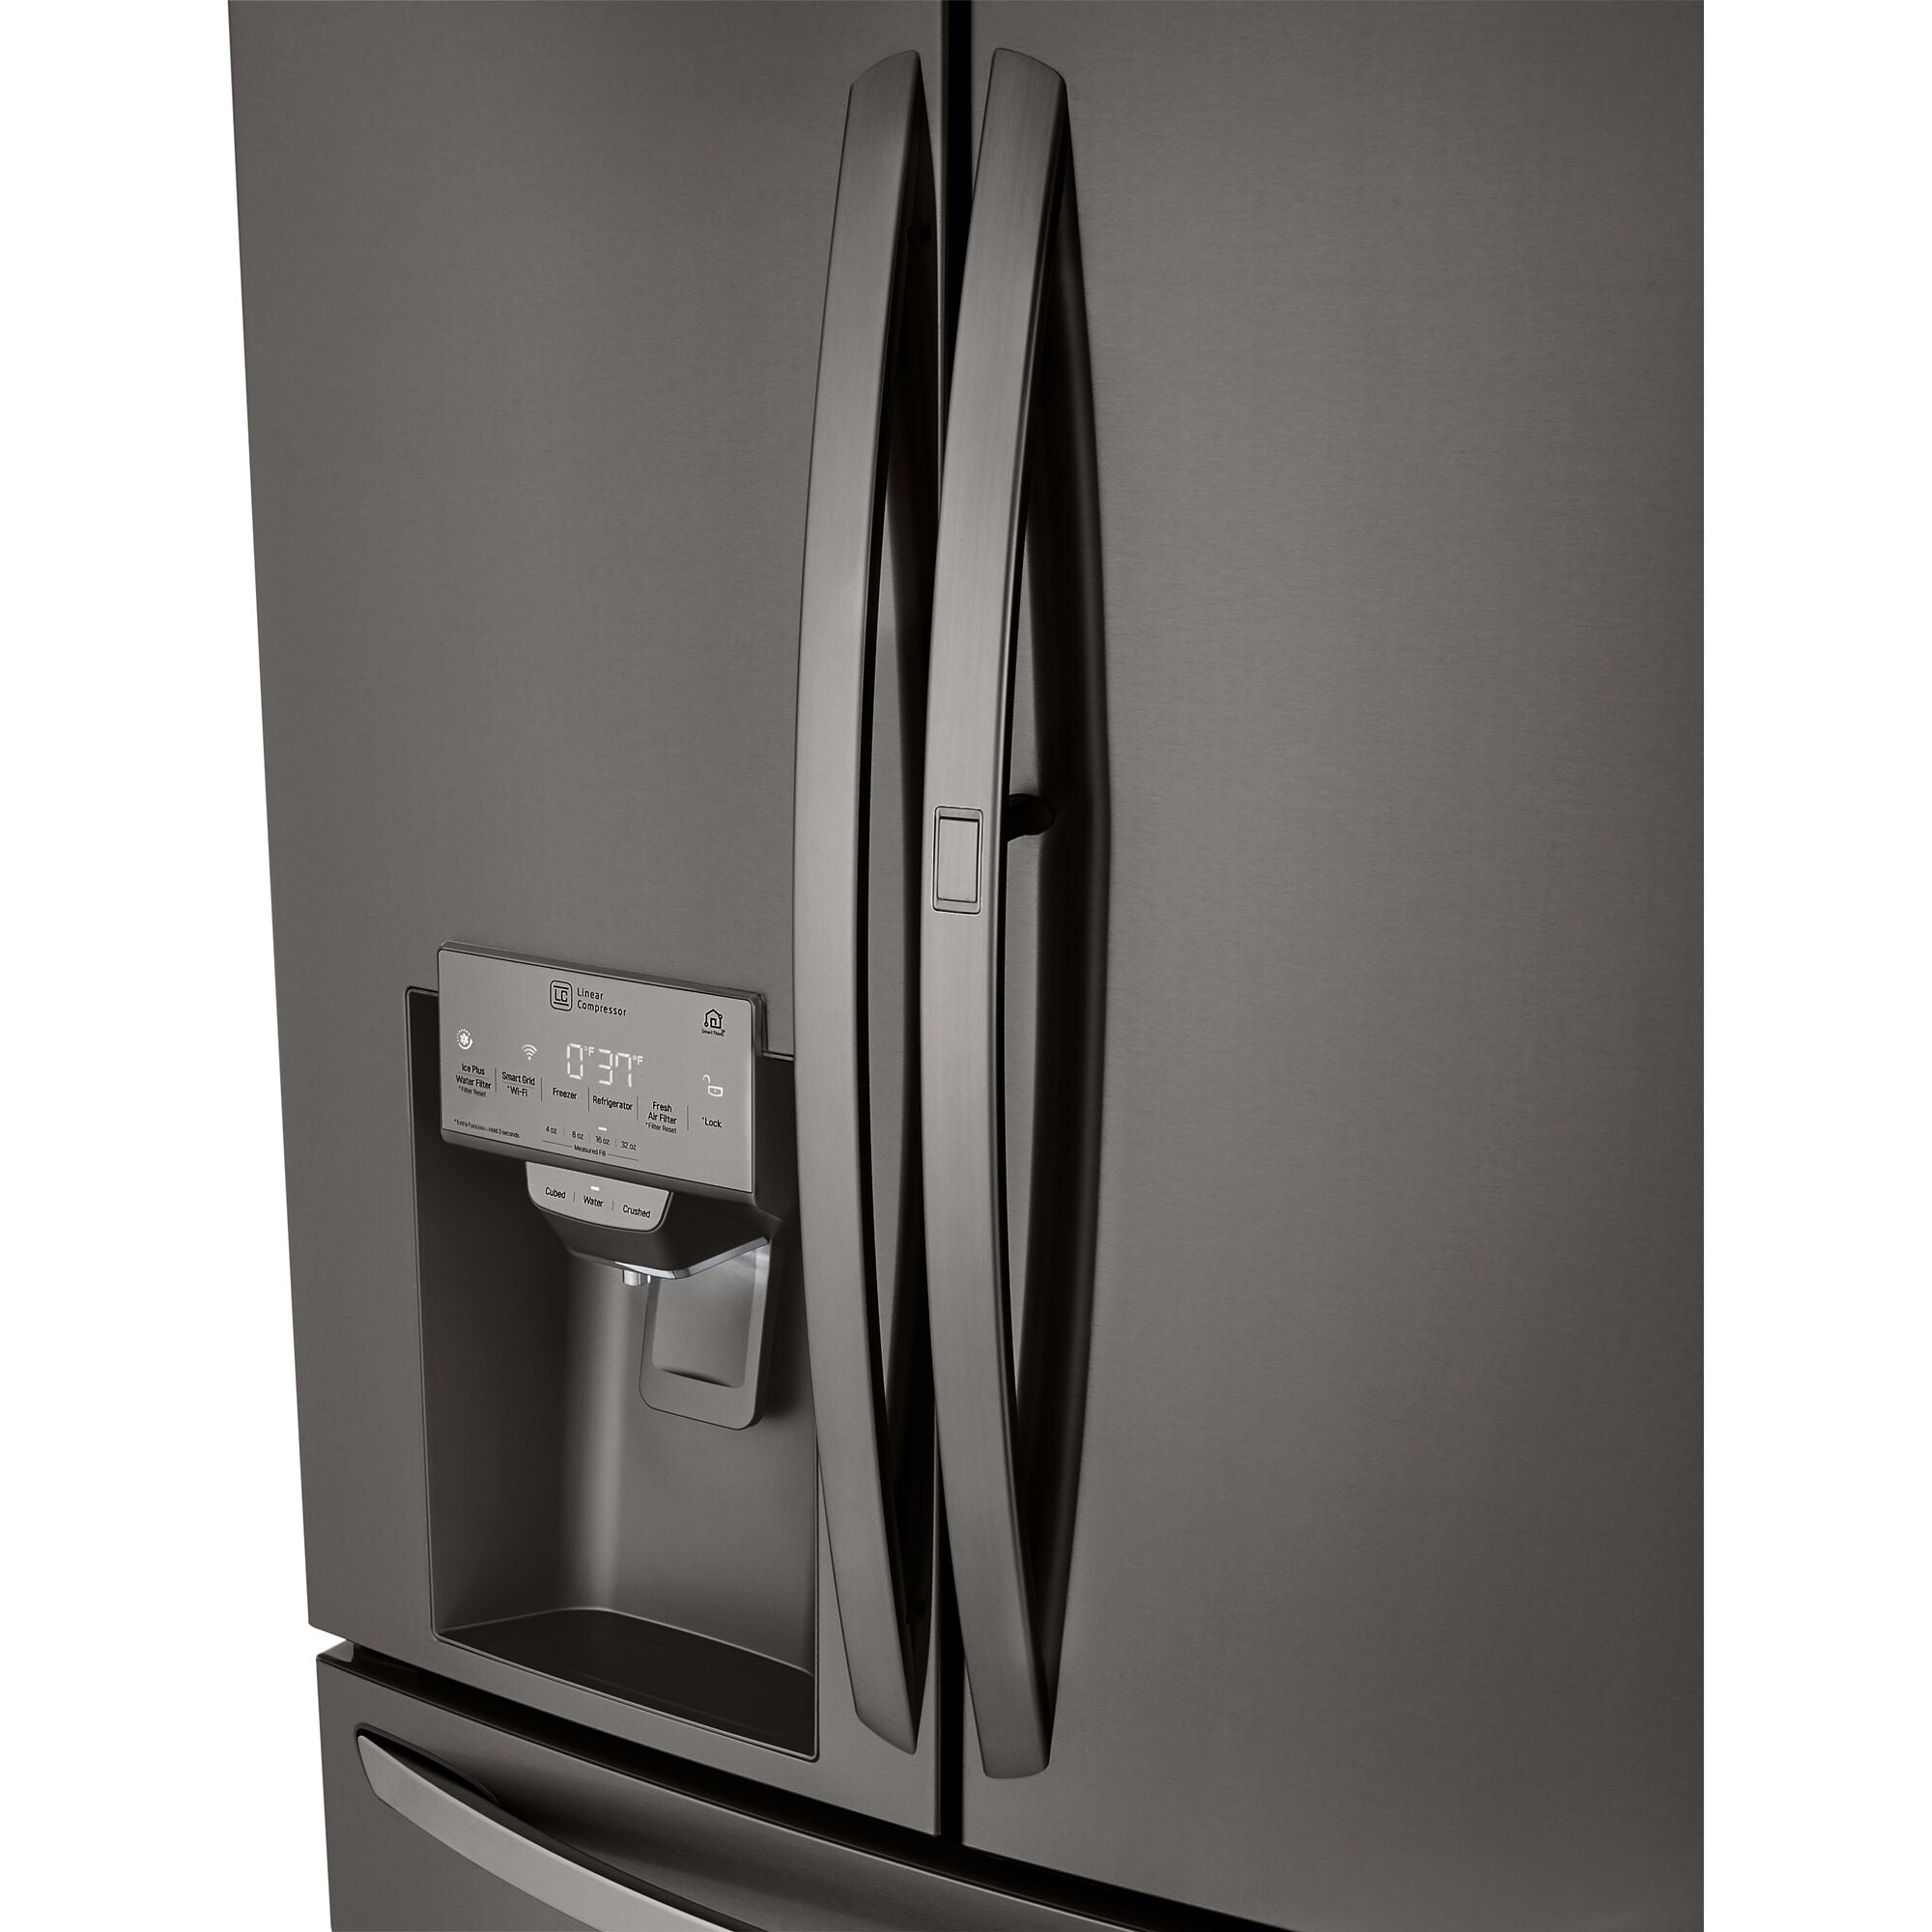 LG 36 Inch 4-Door French Door Refrigerator in Black Stainless Steel 23 Cu. Ft. (LRMDC2306D)